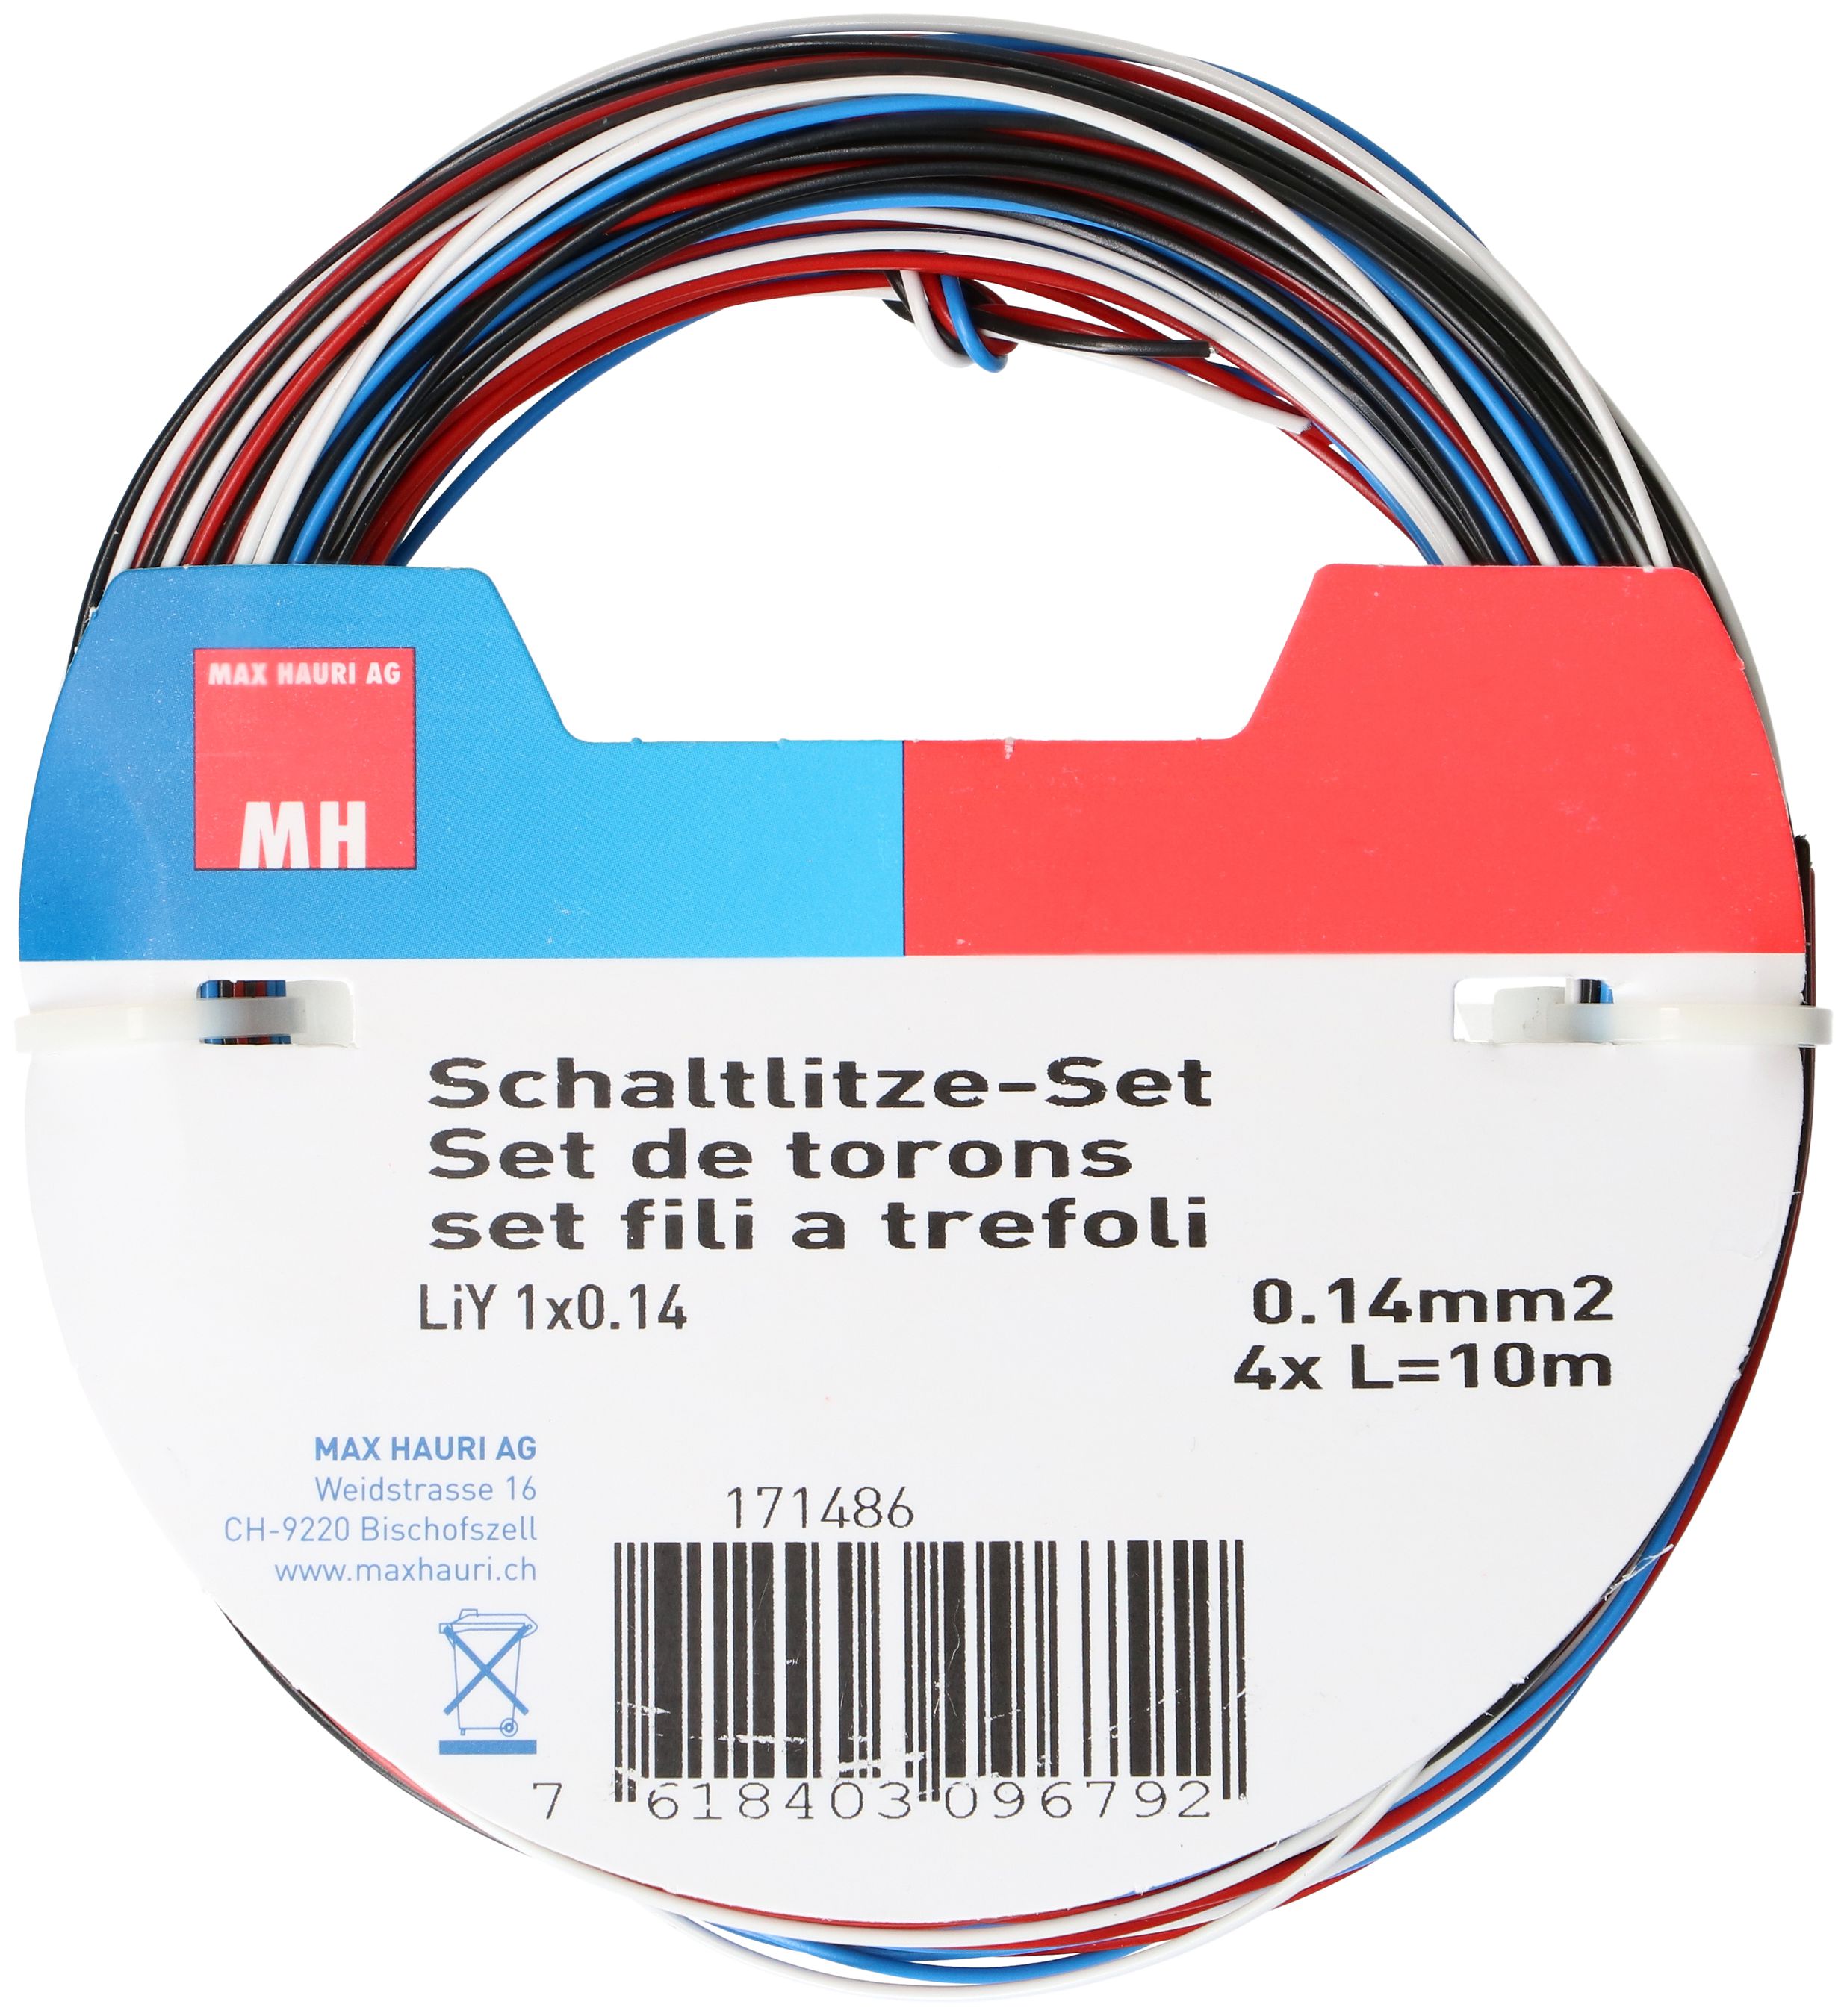 Schaltlitze-Set 0.14mm2 4x 10m bl/rt/sz/ws